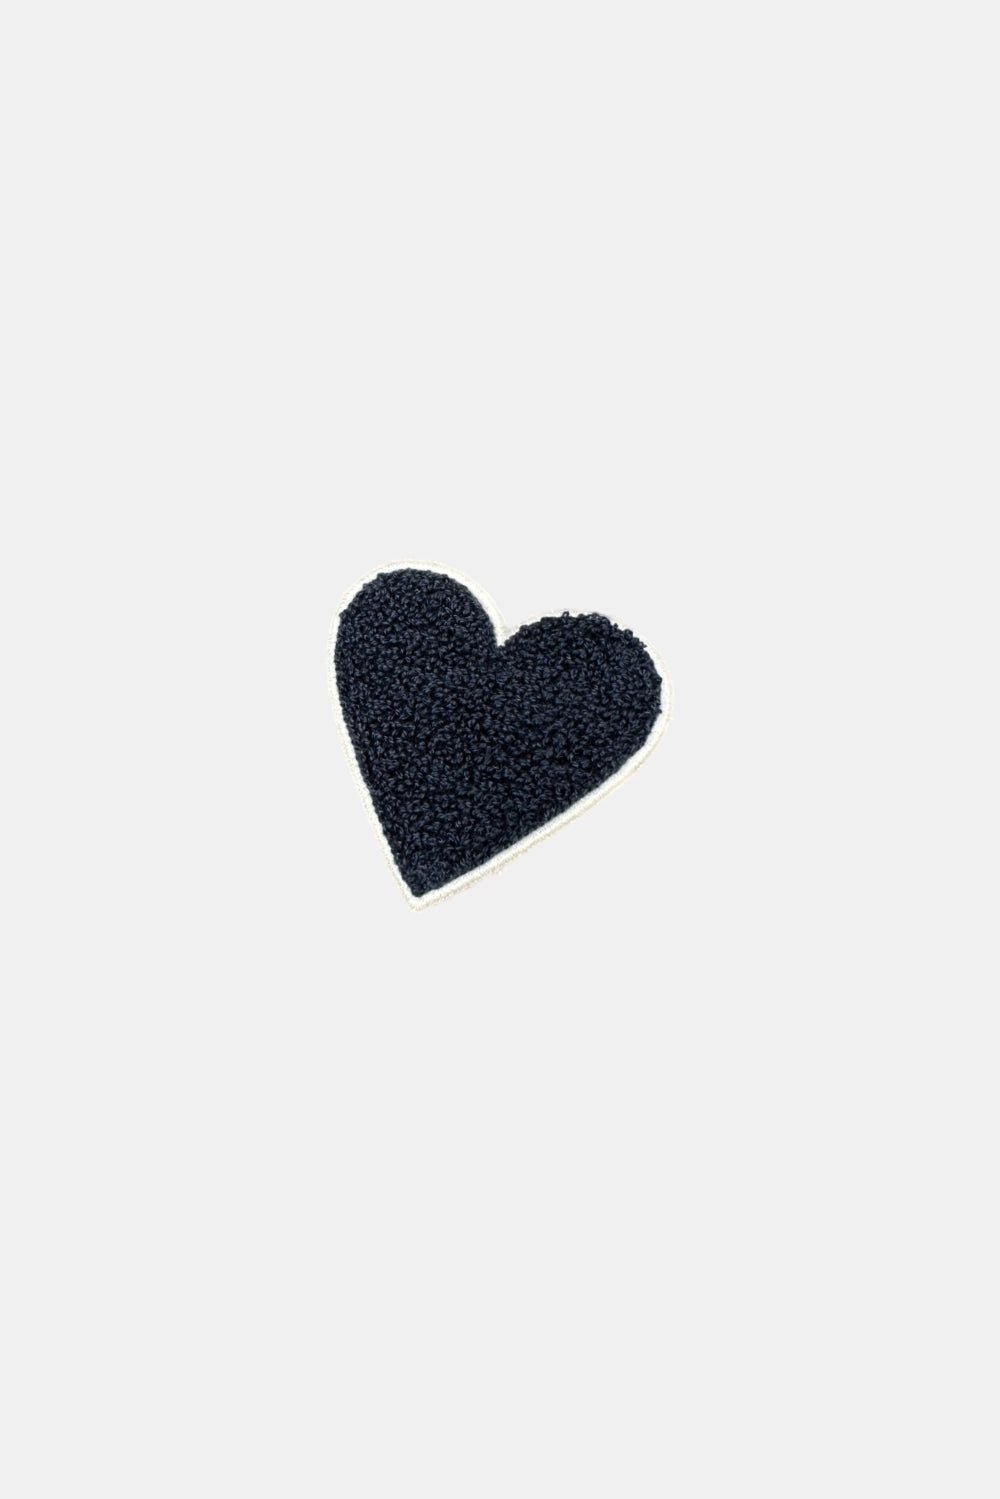 Heart Patch Comfort Black Sweatshirt